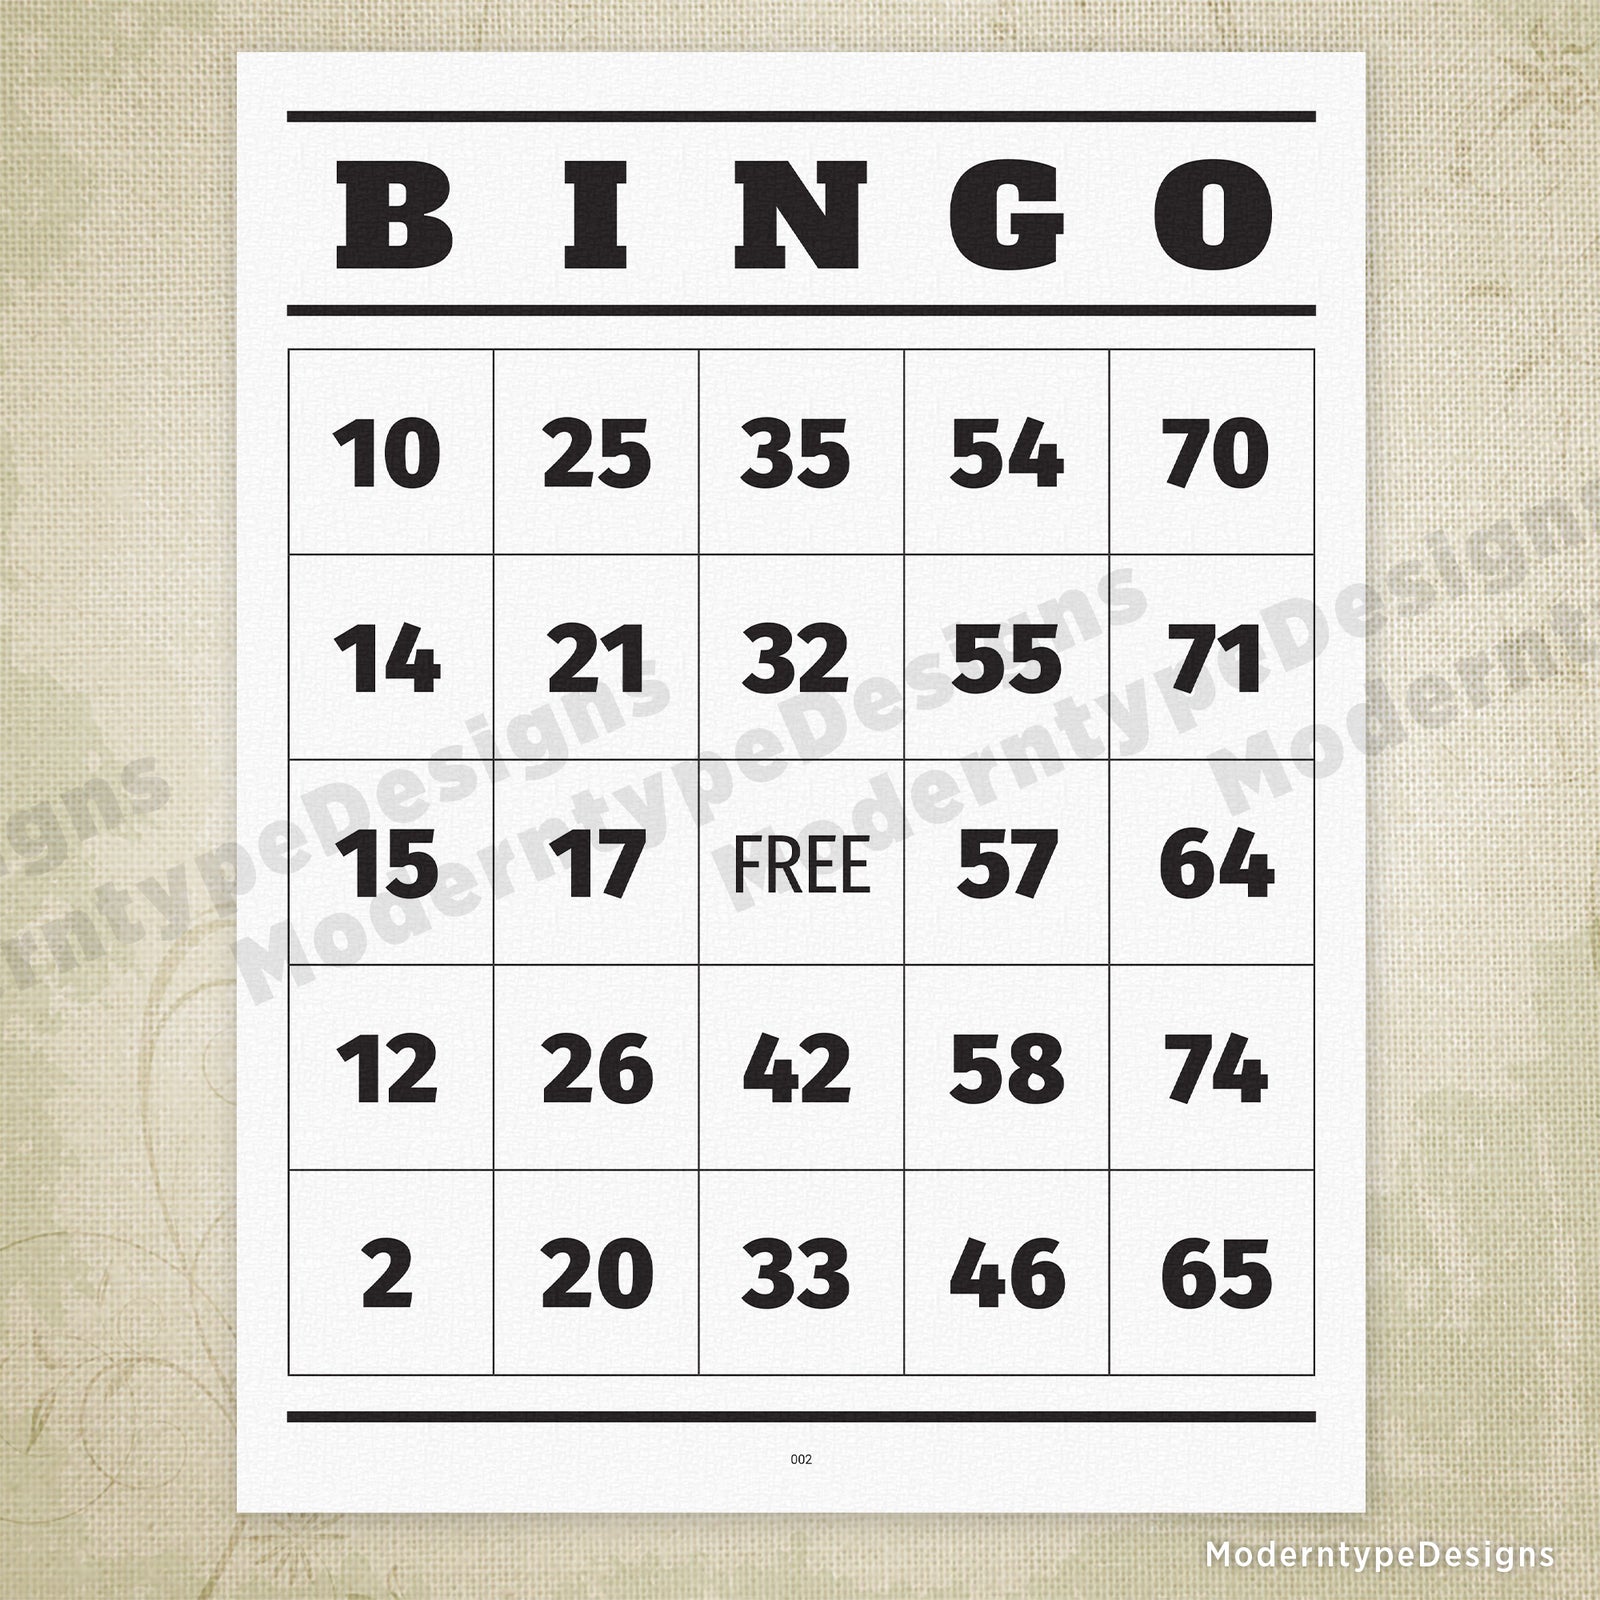 bingo number caller 1 75